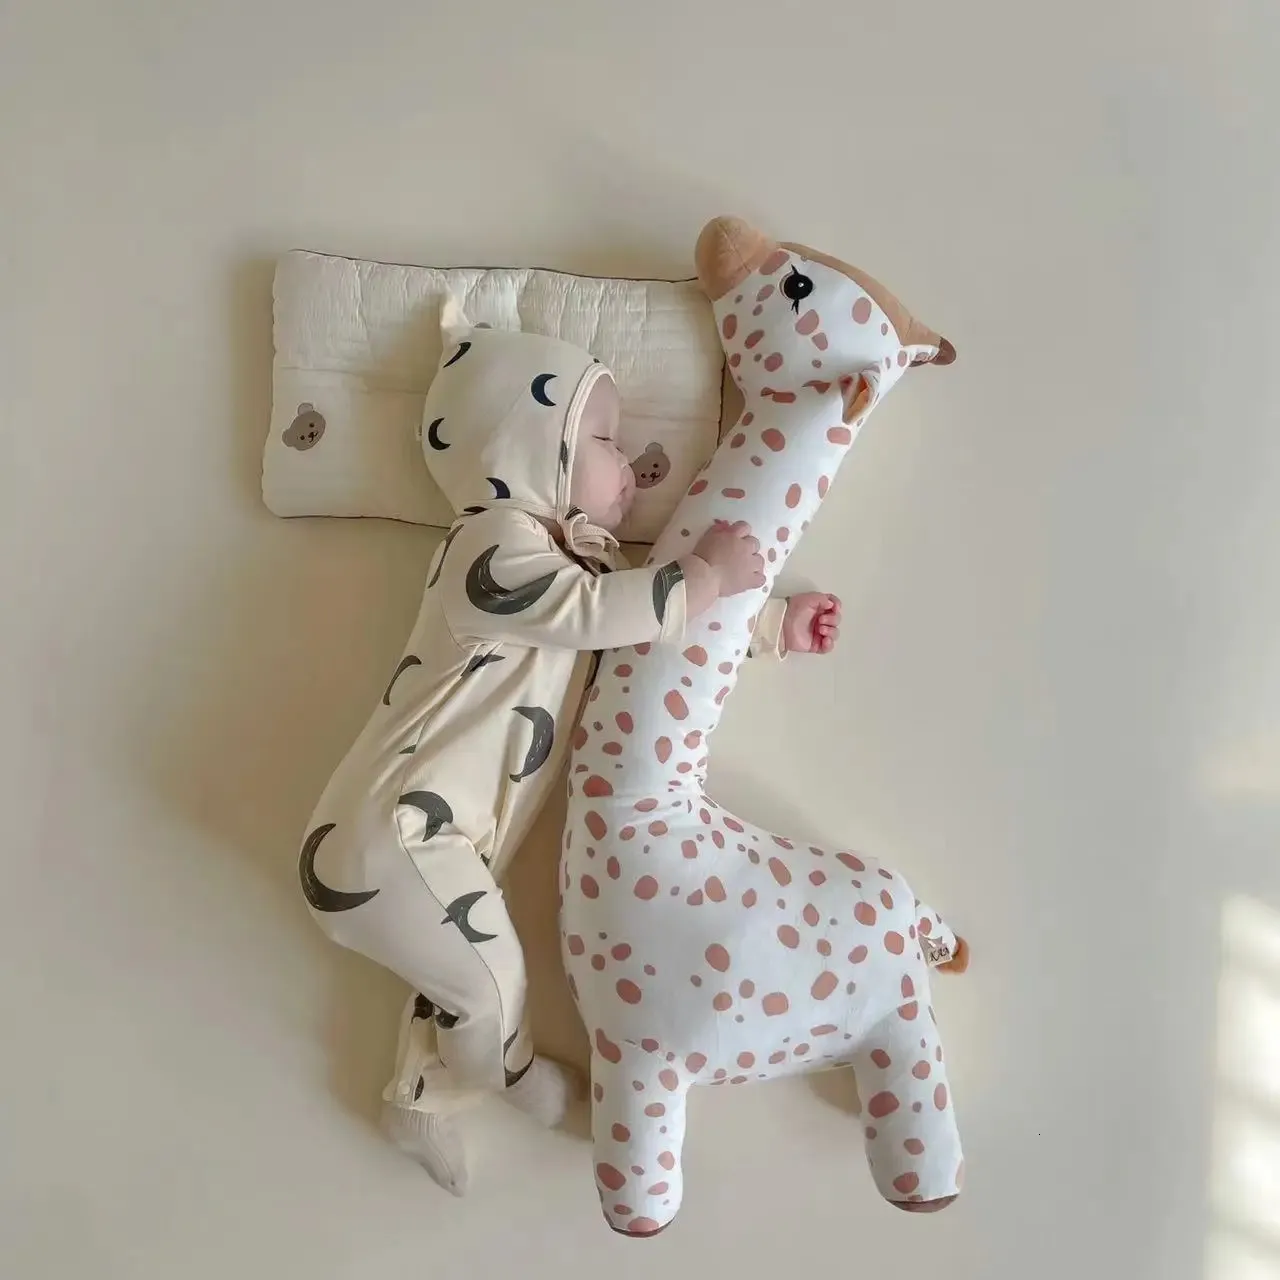 Peluche giocattolo grande size45100 cm simulazione giraffa soft toys bambola ripiena per ragazzi addormentati regalo di compleanno 240401